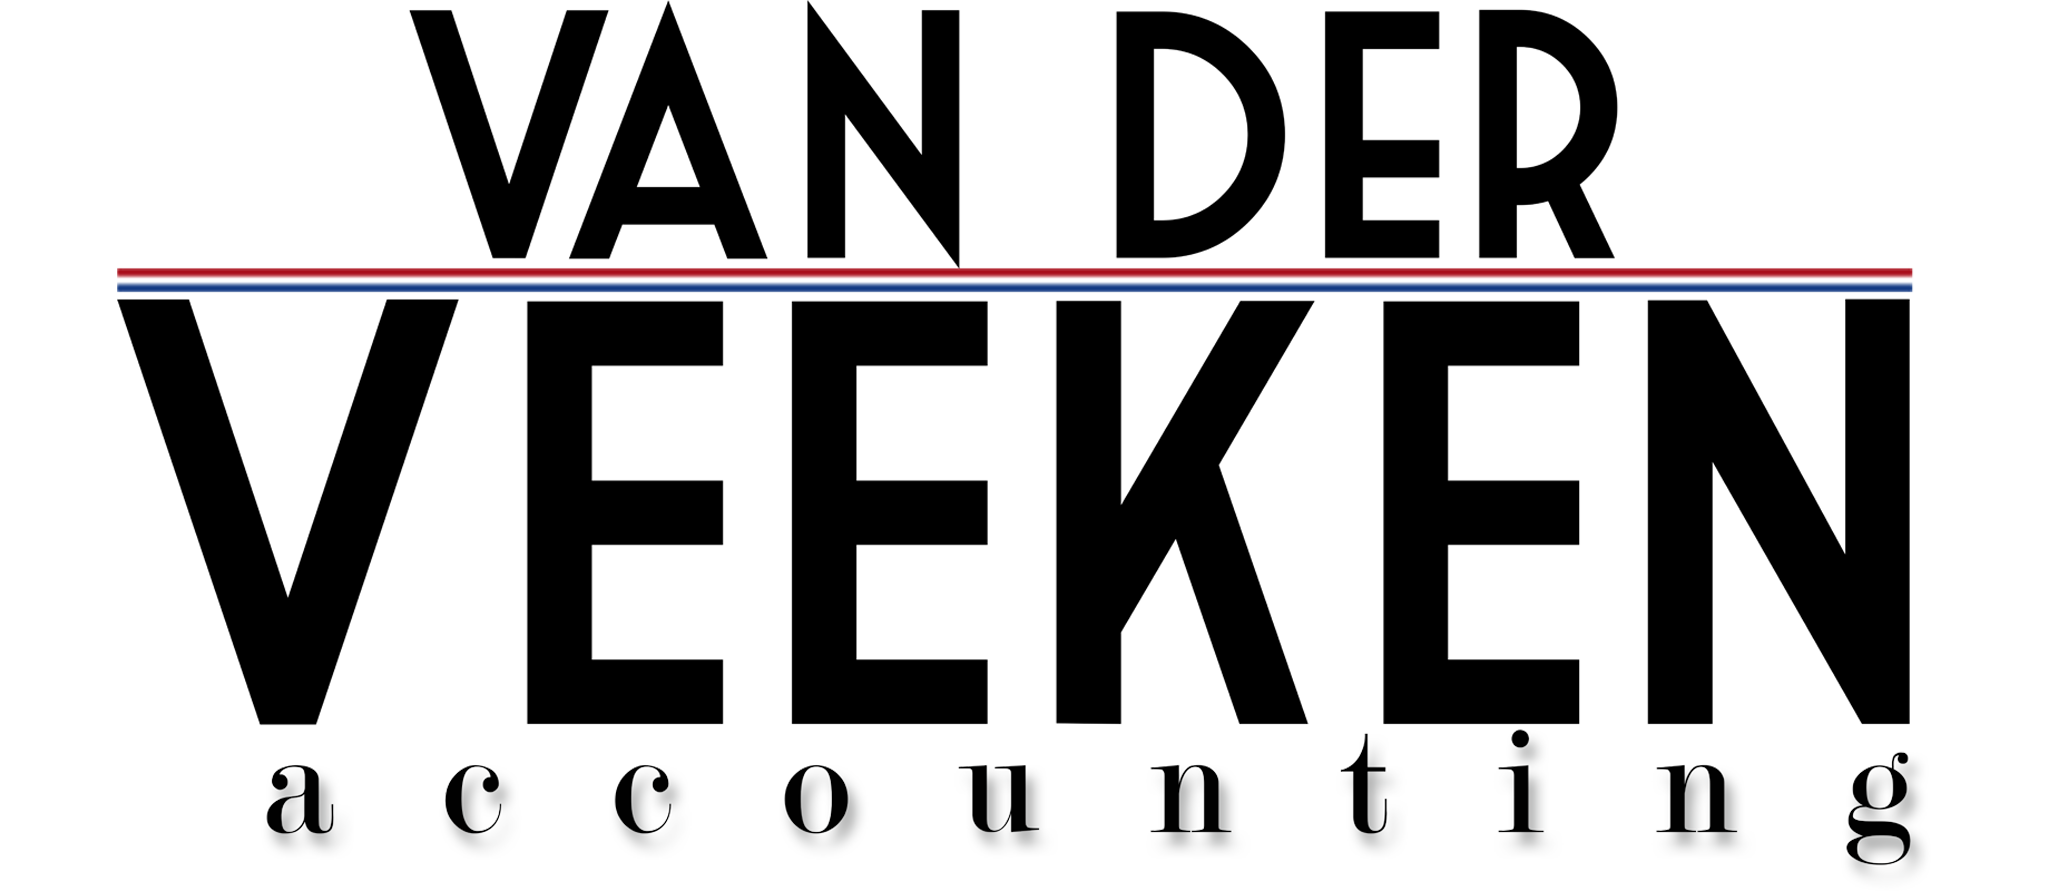 Veeken-logo-1.png